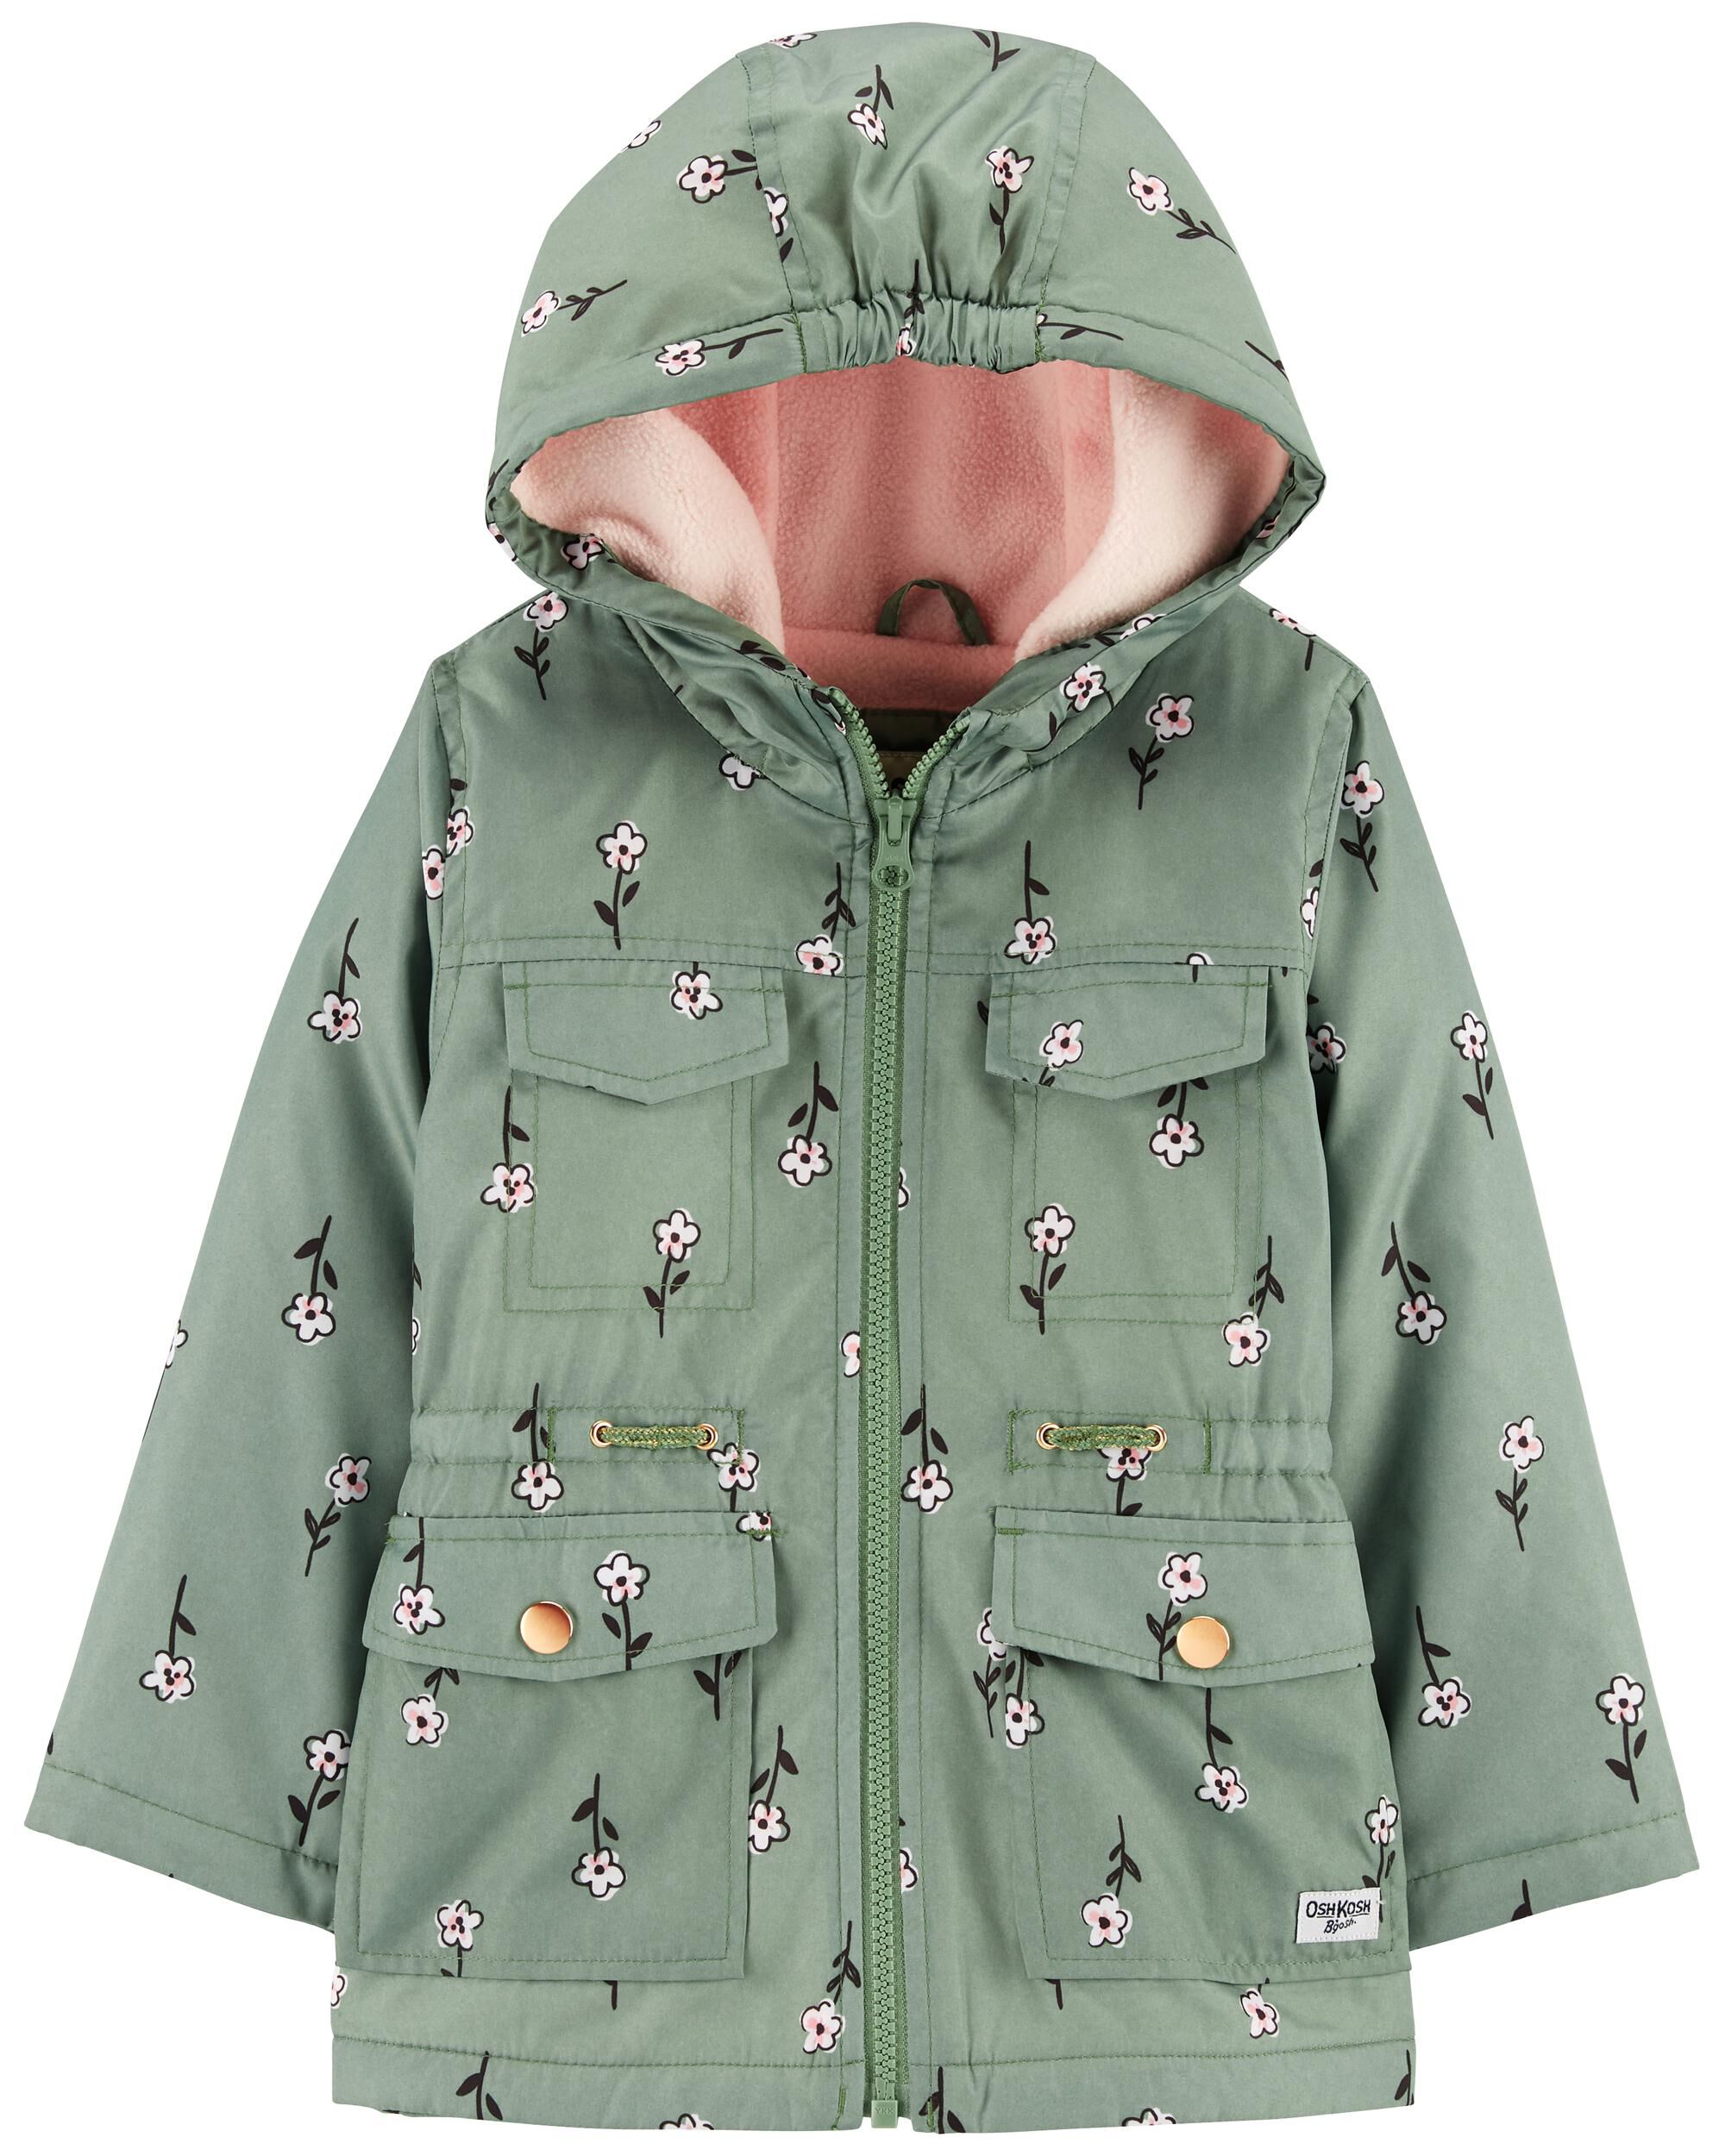 Toddler Floral Print Fleece Lined Jacket